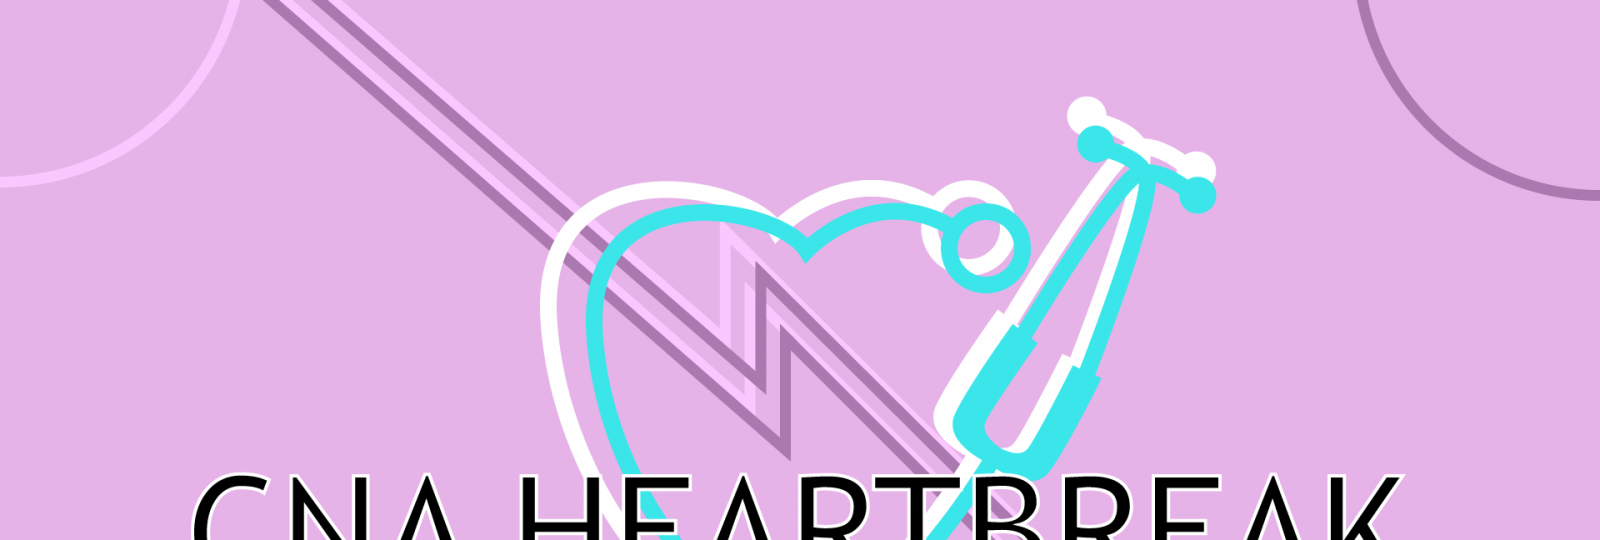 CNA Heartbreak Graphic